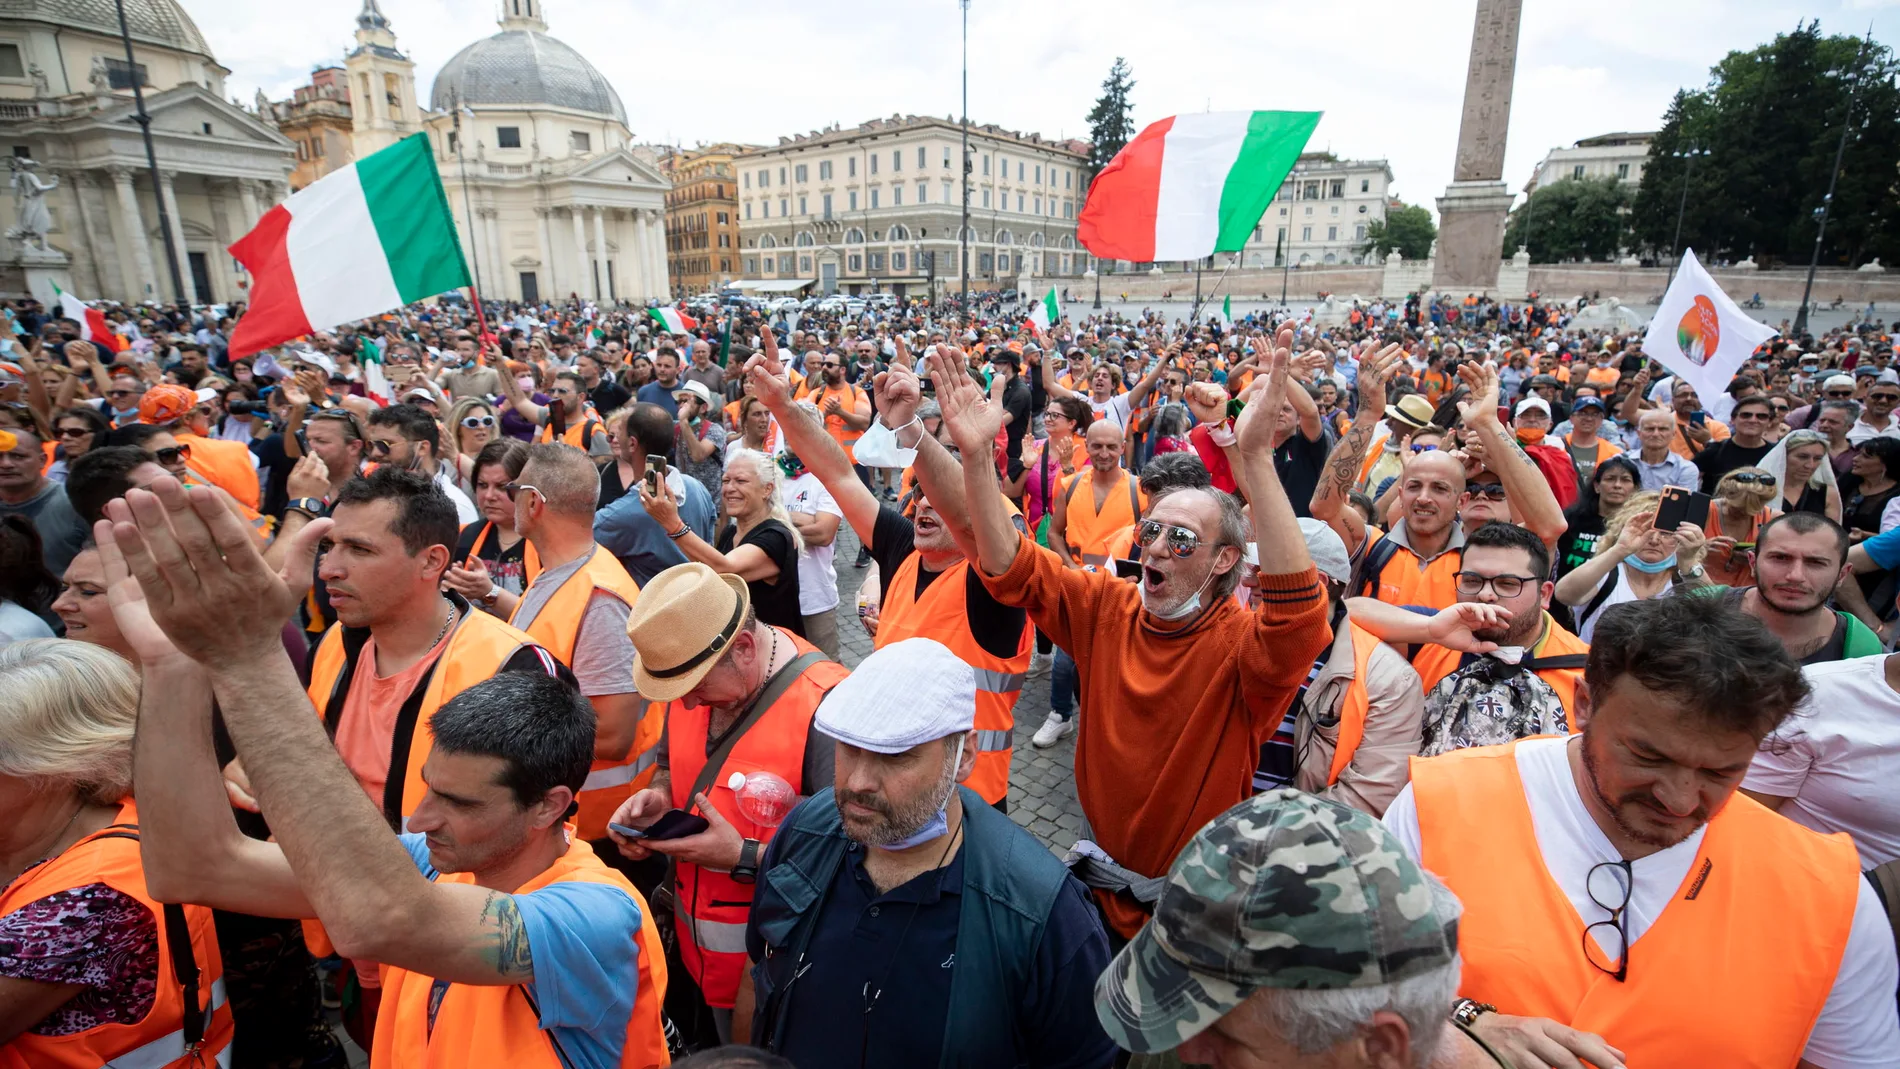 Los negacionistas del Covid-19, los "chalecos naranjas", se manifiestan en el centro de Roma